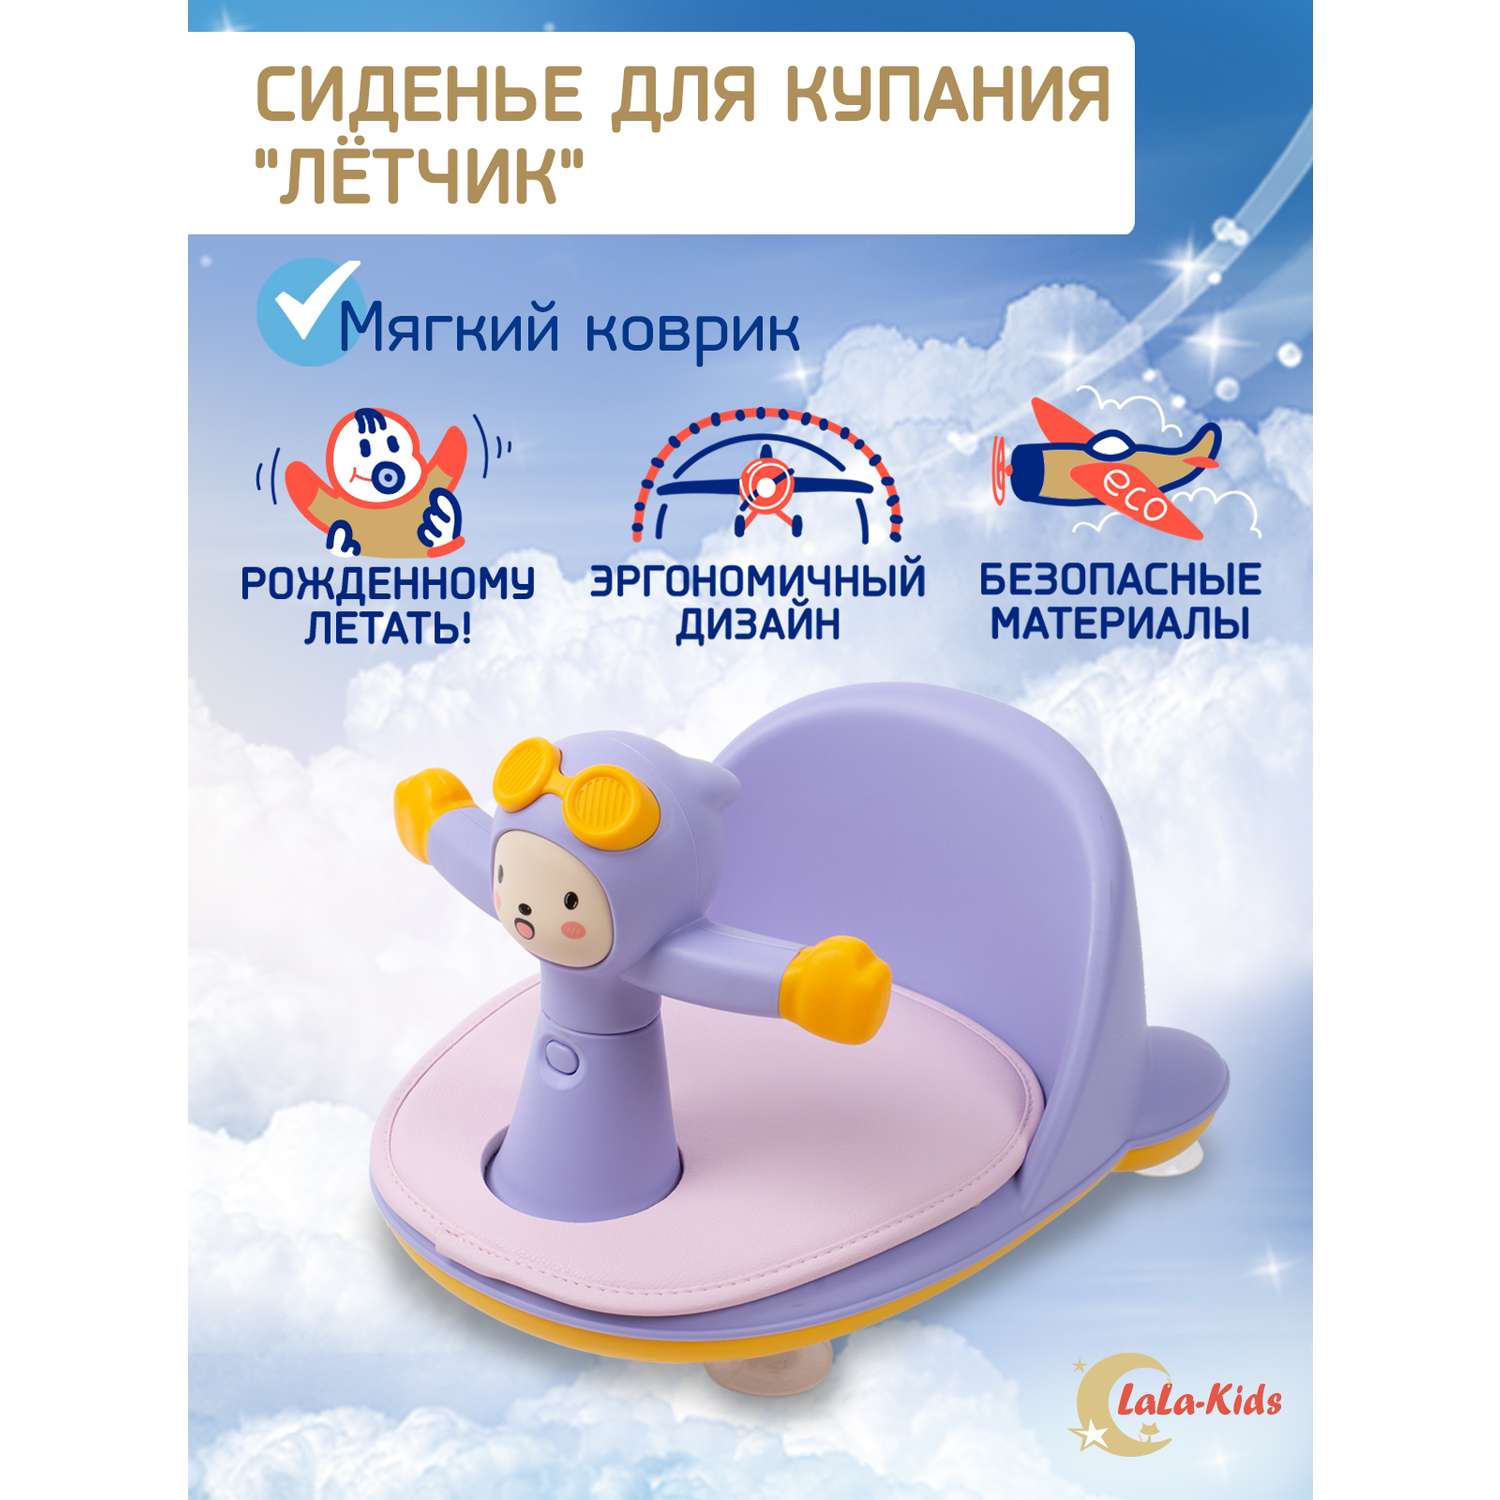 Сиденье LaLa-Kids для купания с мягким ковриком Летчик сиреневое - фото 2